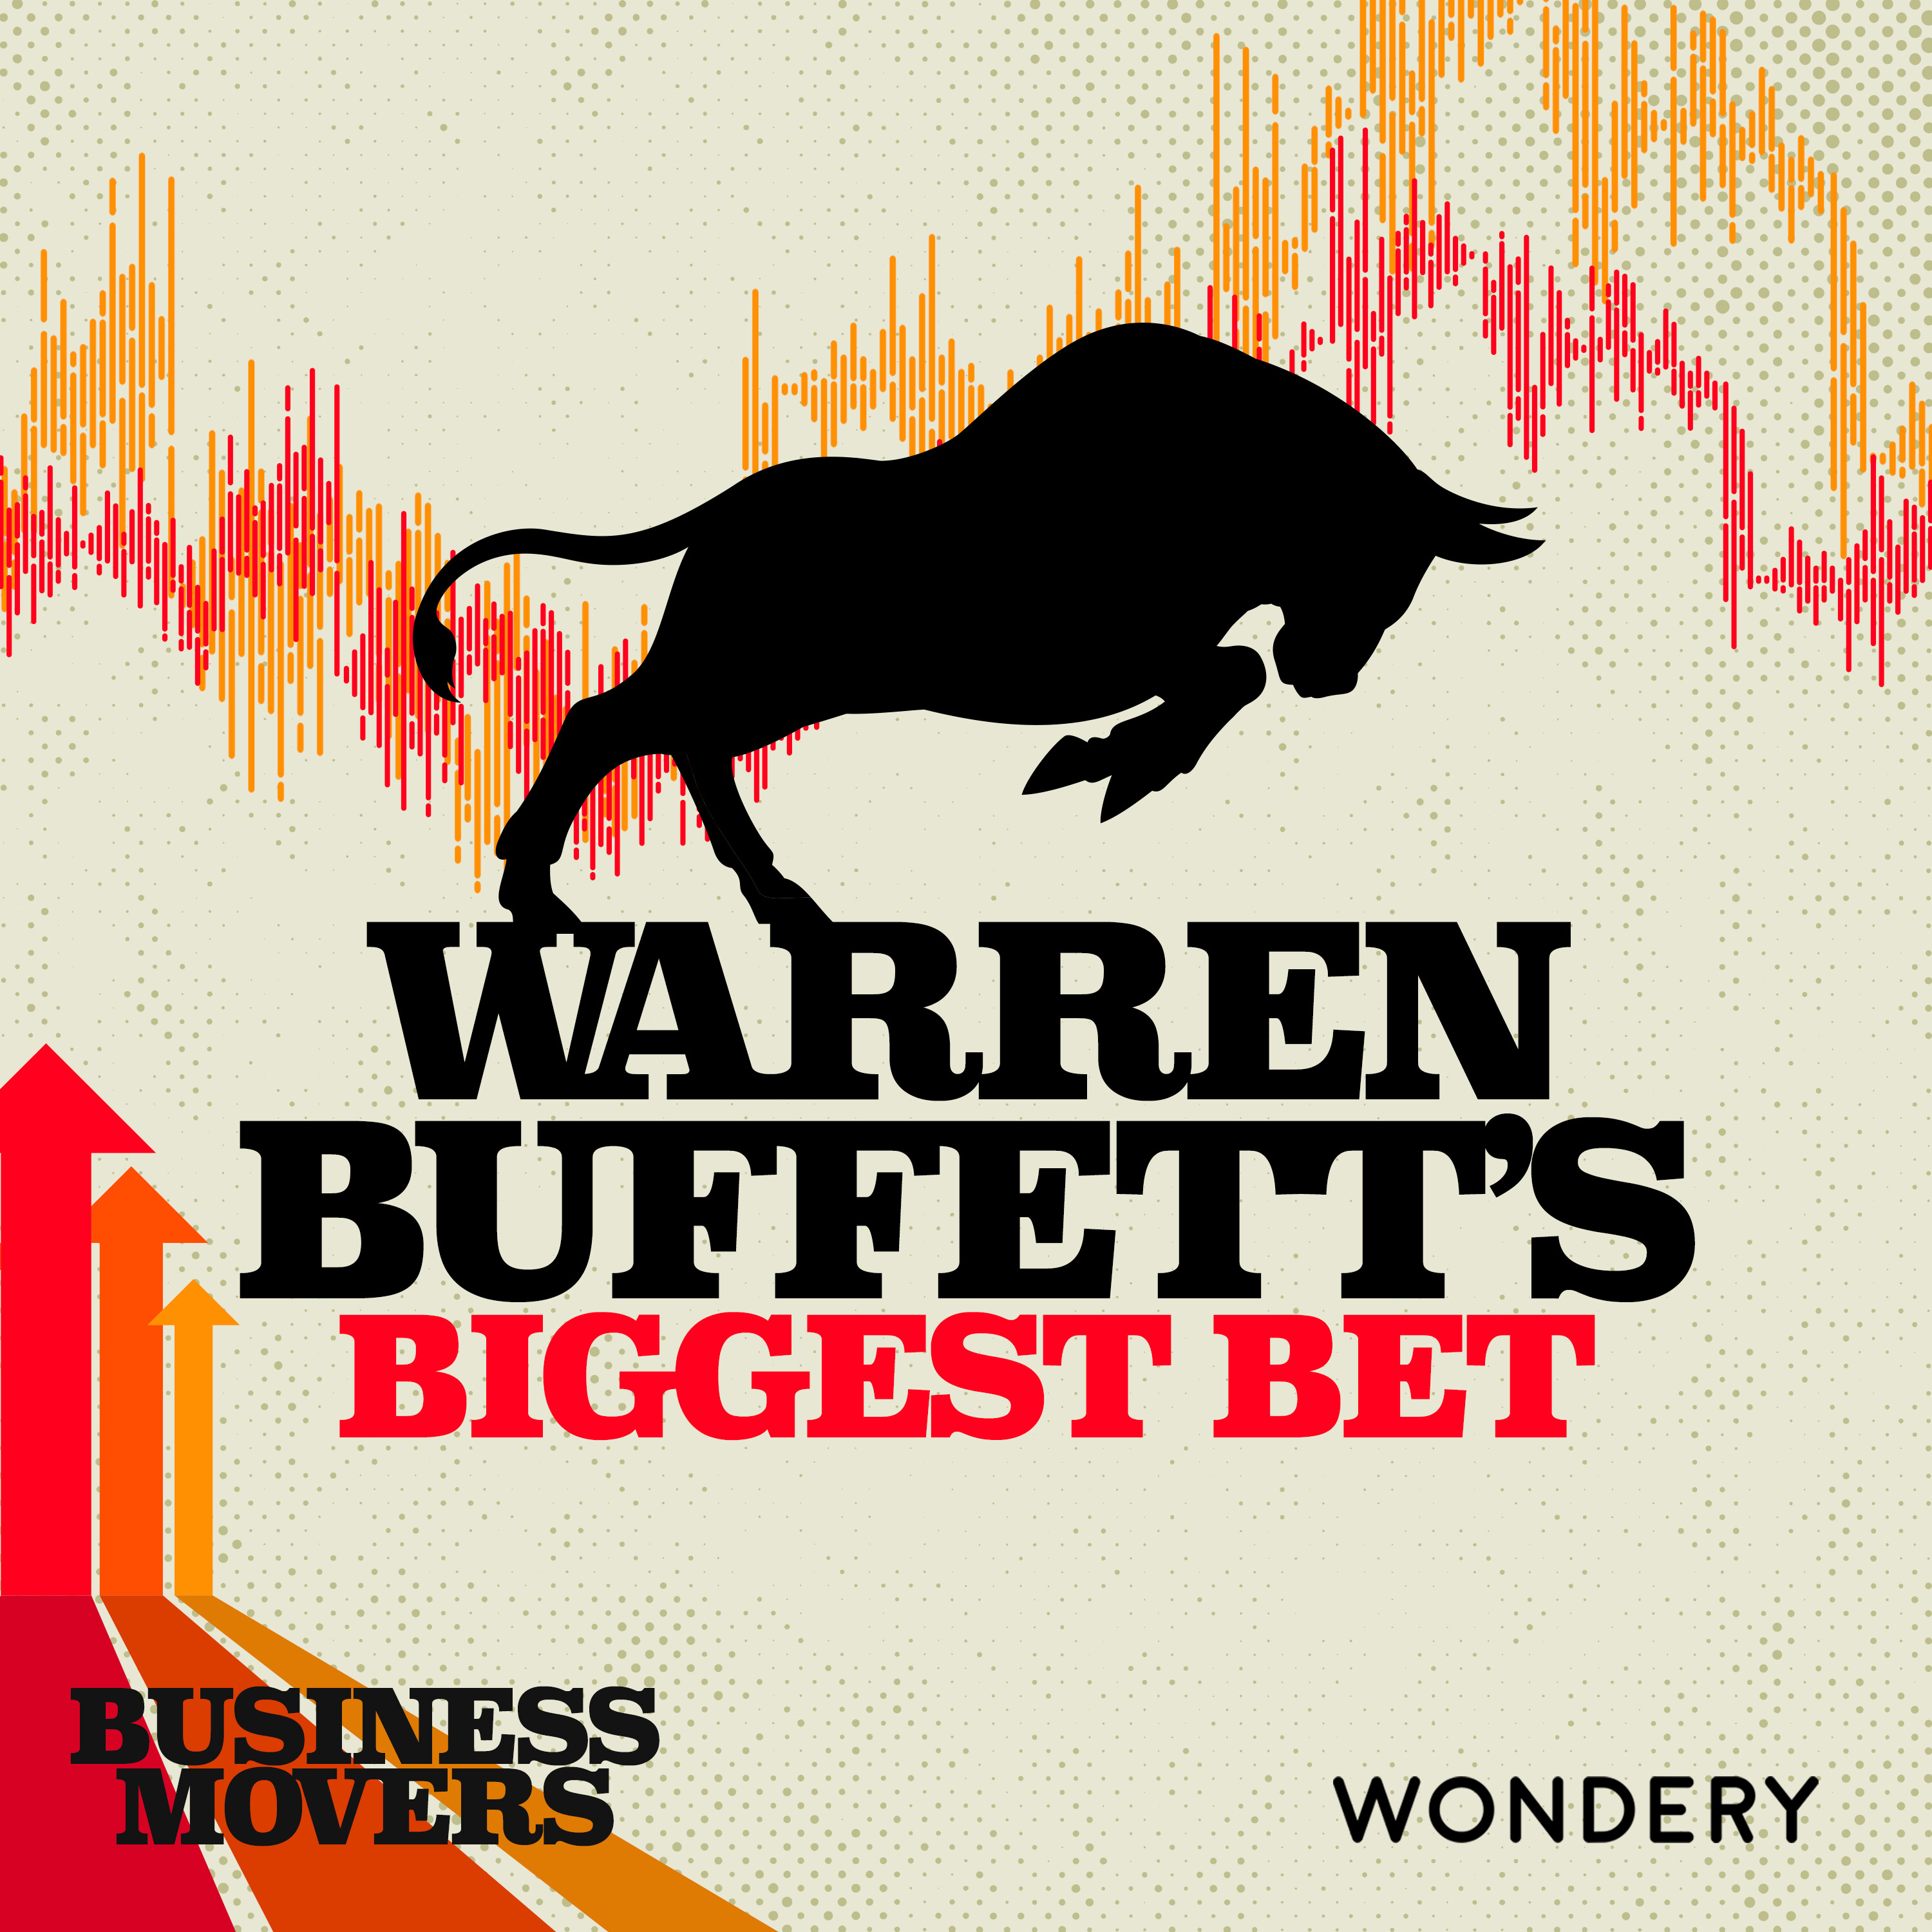 Warren Buffett’s Biggest Bet | Author Robert Hagstrom Explores the Warren Buffett Way | 5